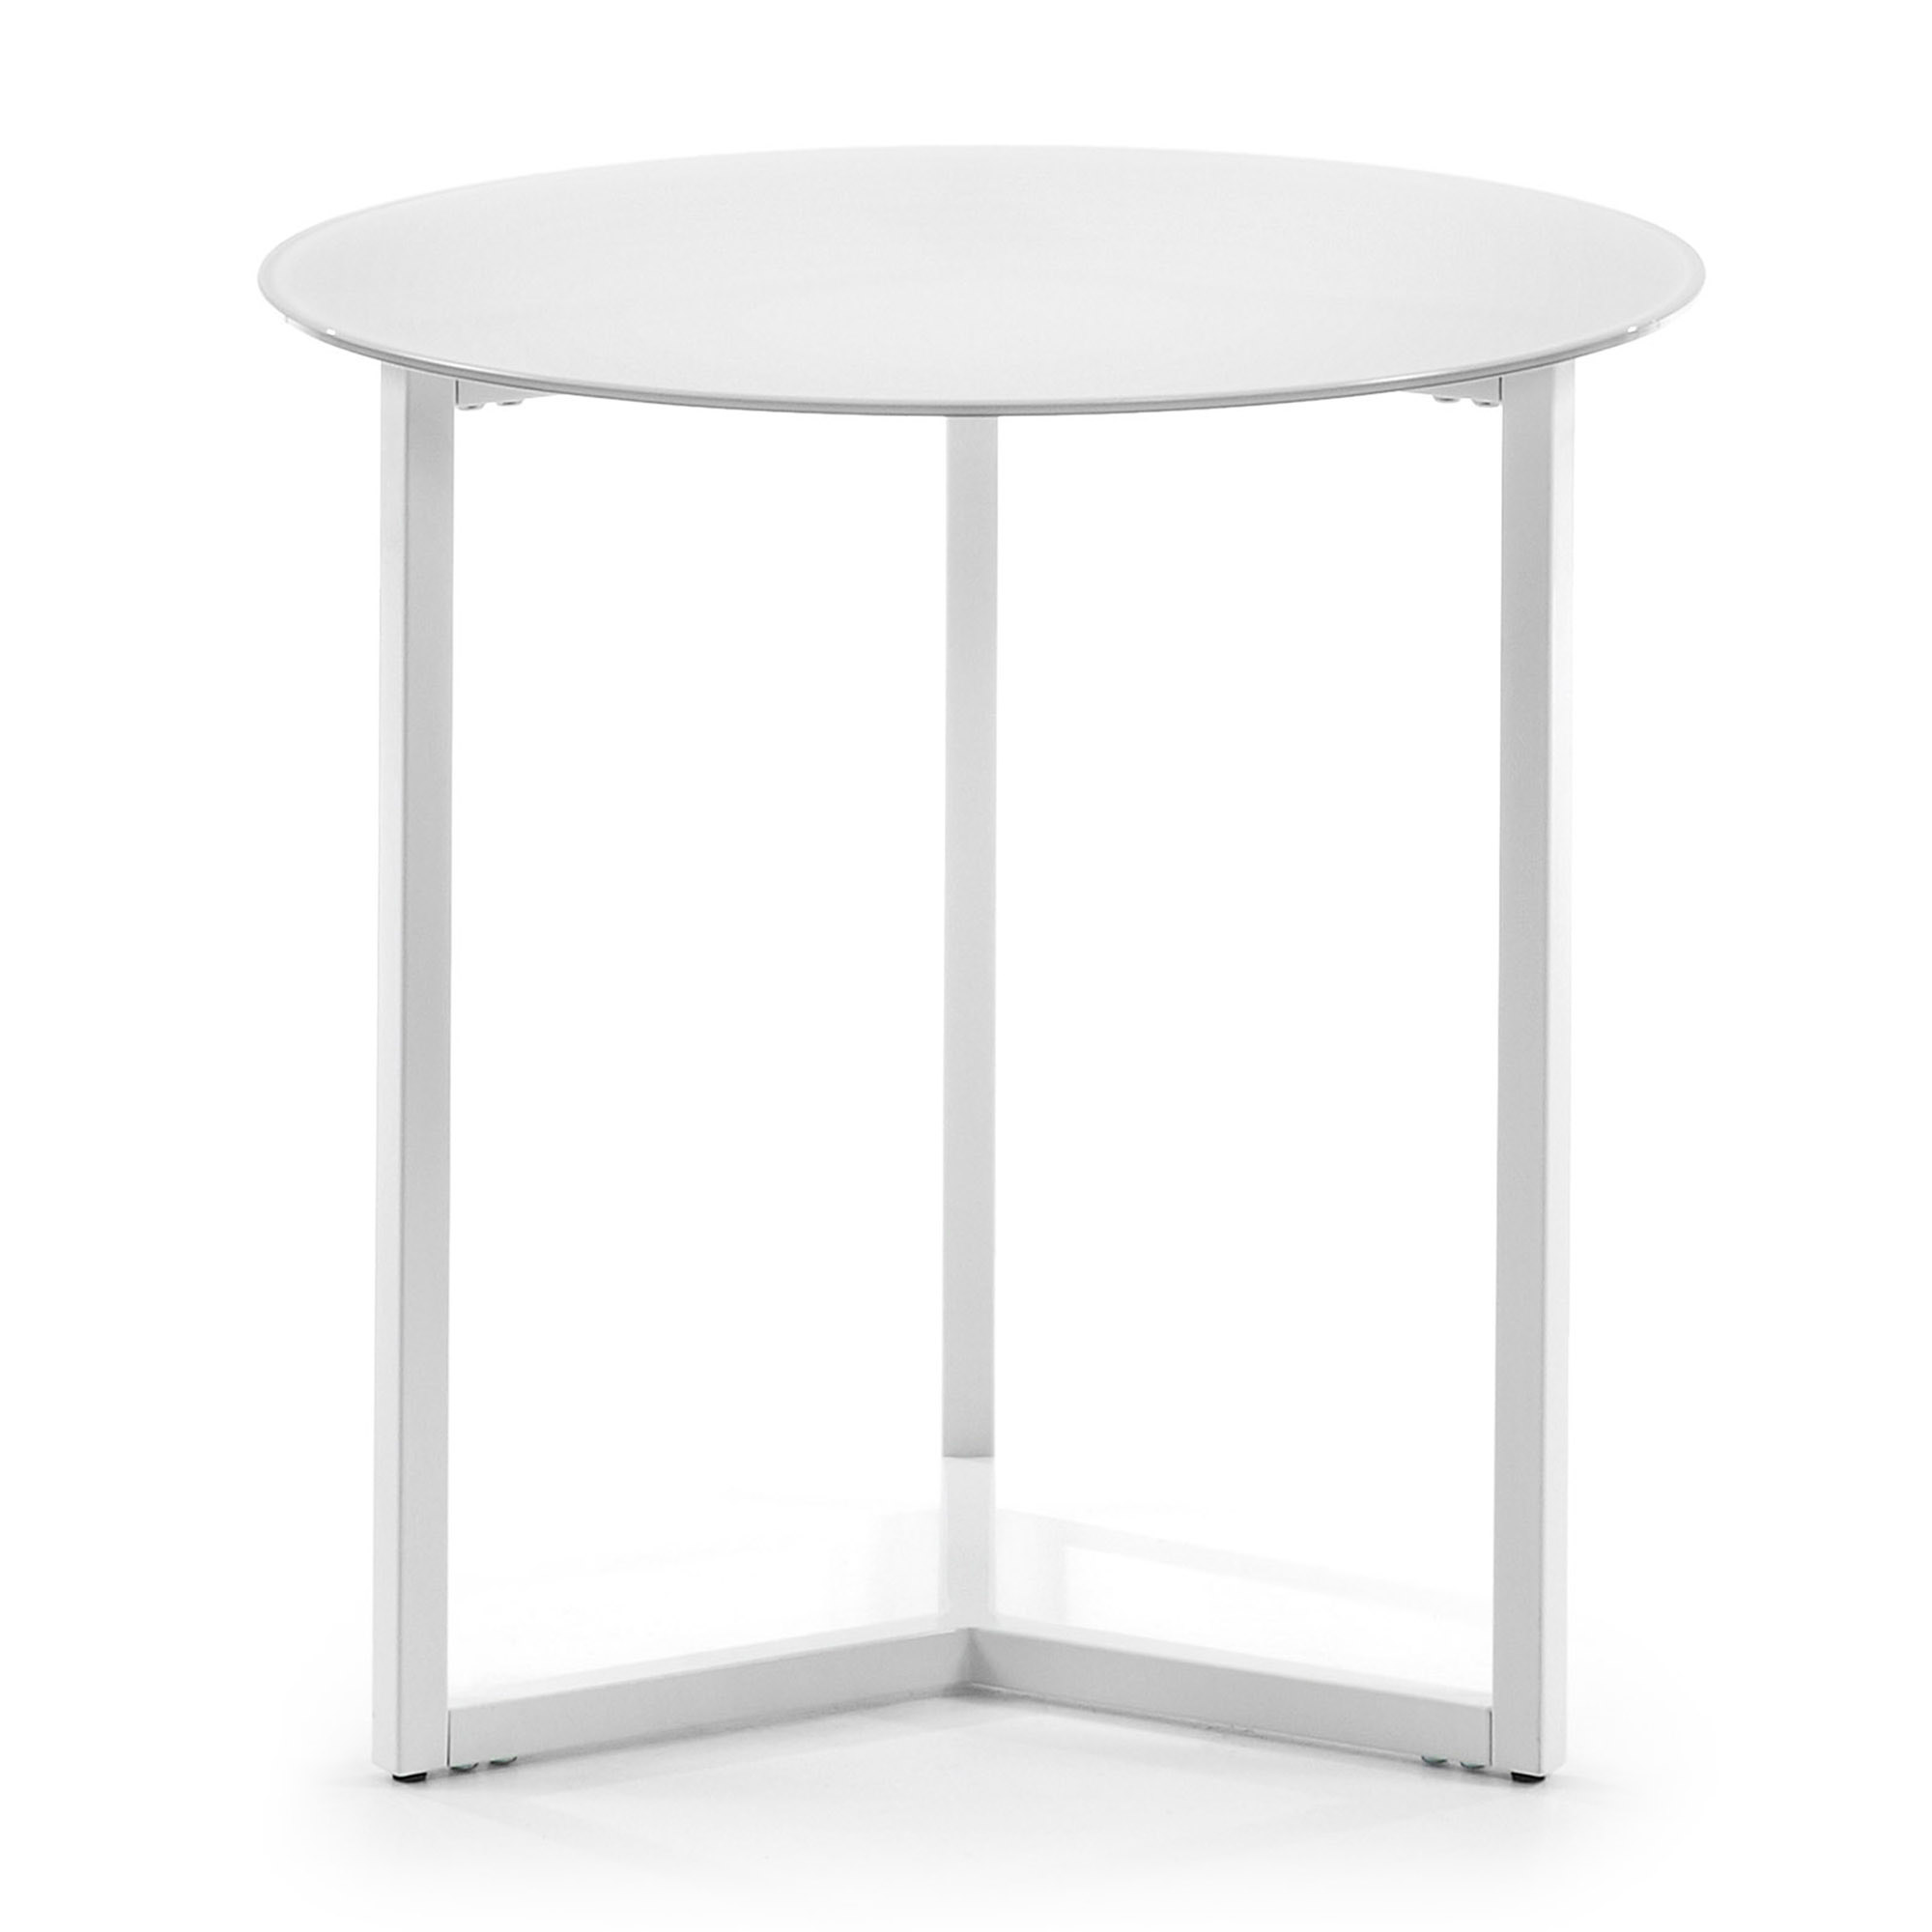 LAFORMA Raeam sidobord, runt - vitt glas och vitt stål (Ø50)